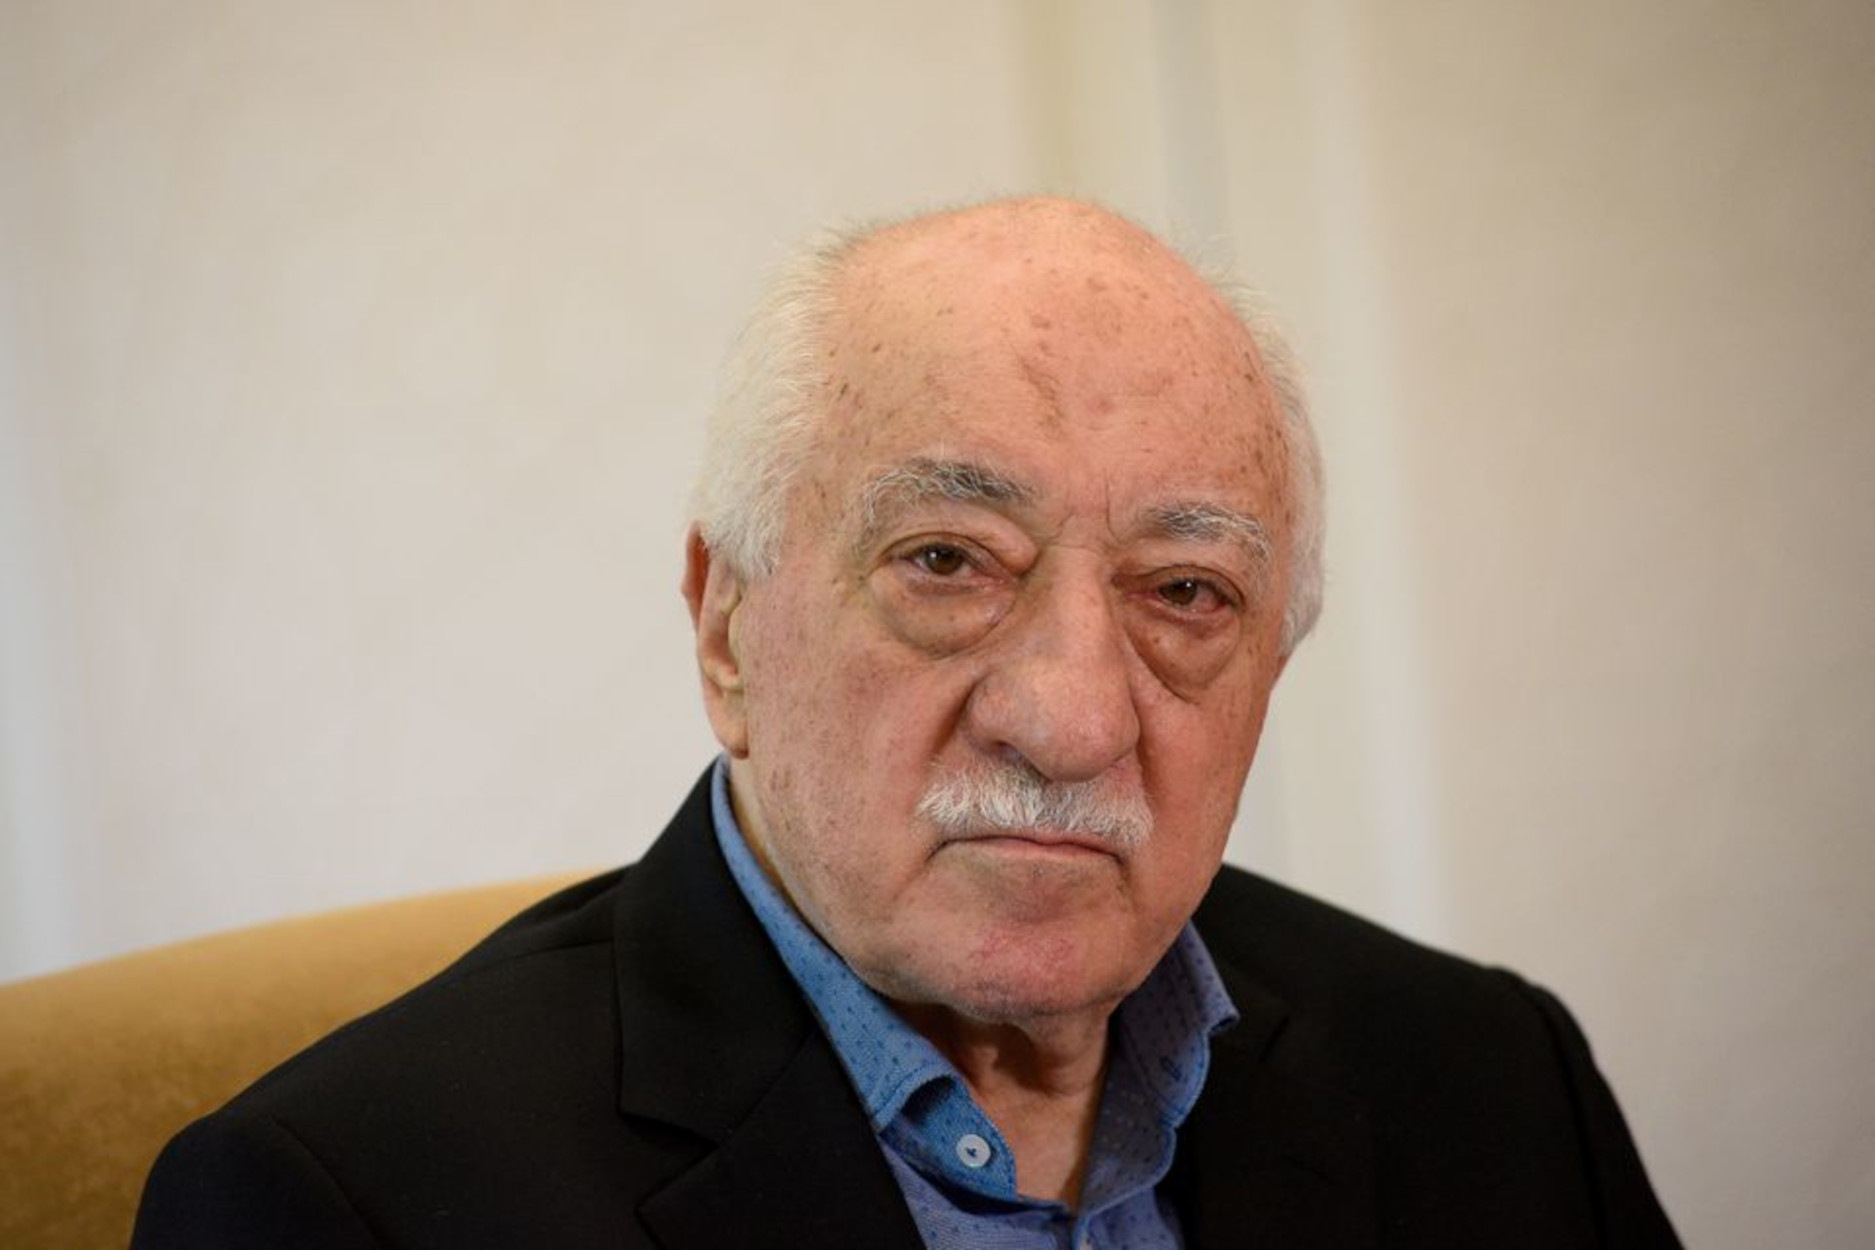 Φετουλάχ Γκιουλέν: Ο Ερντογάν λέει ανοησίες ότι θα κάνει κατάληψη στα ελληνικά νησιά